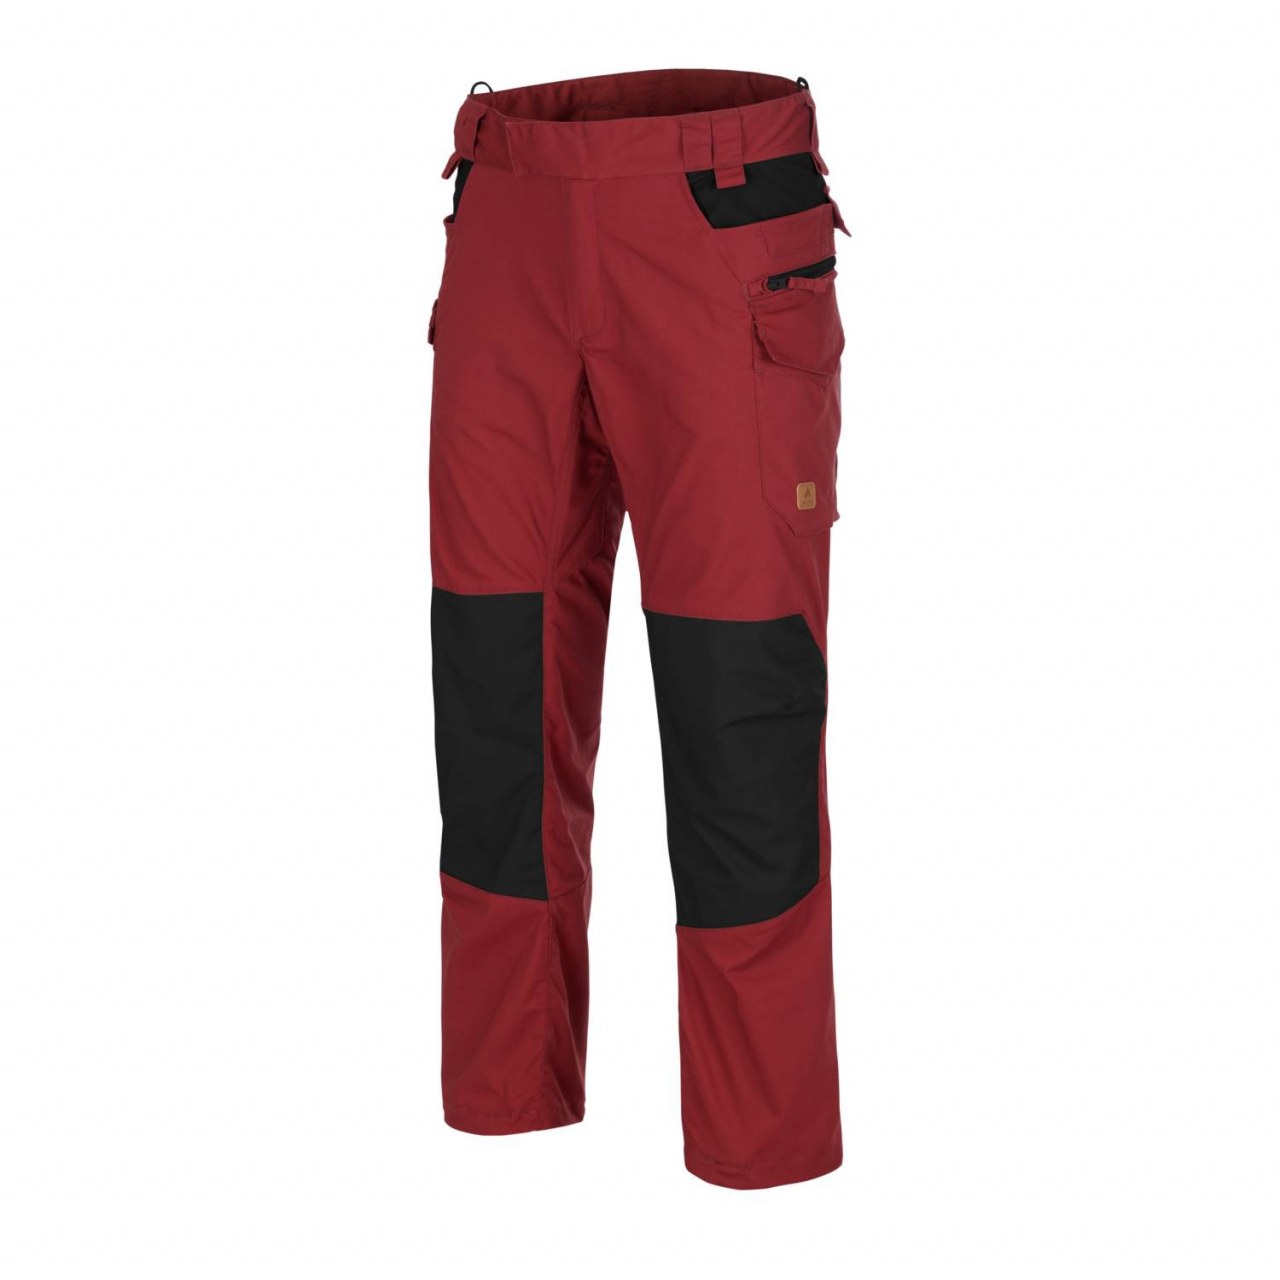 Kalhoty Helikon Pilgrim - červené-černé, L